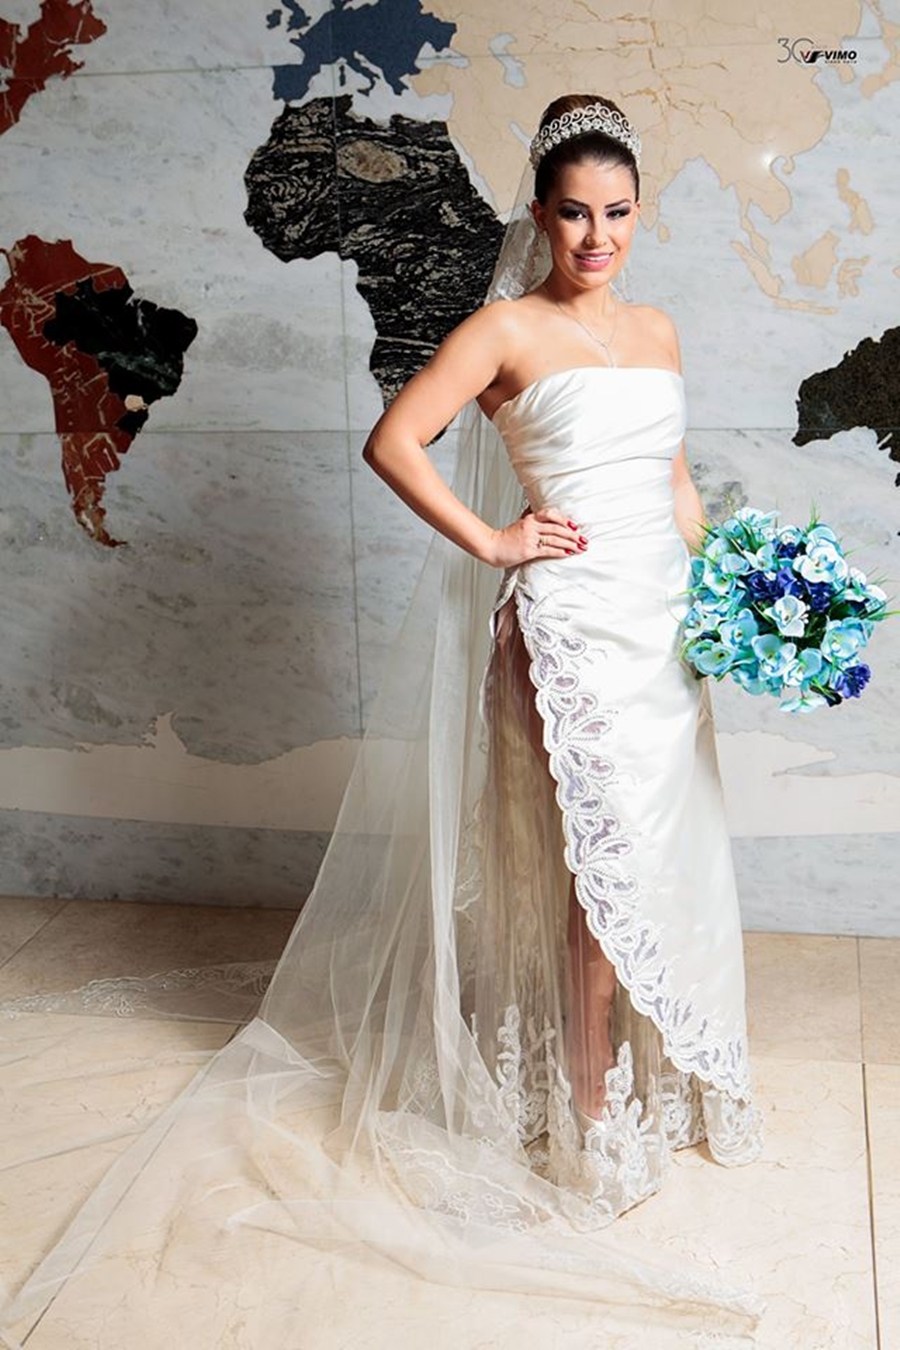 Estilista cria coleção de vestidos de noiva feitos com plástico reciclado